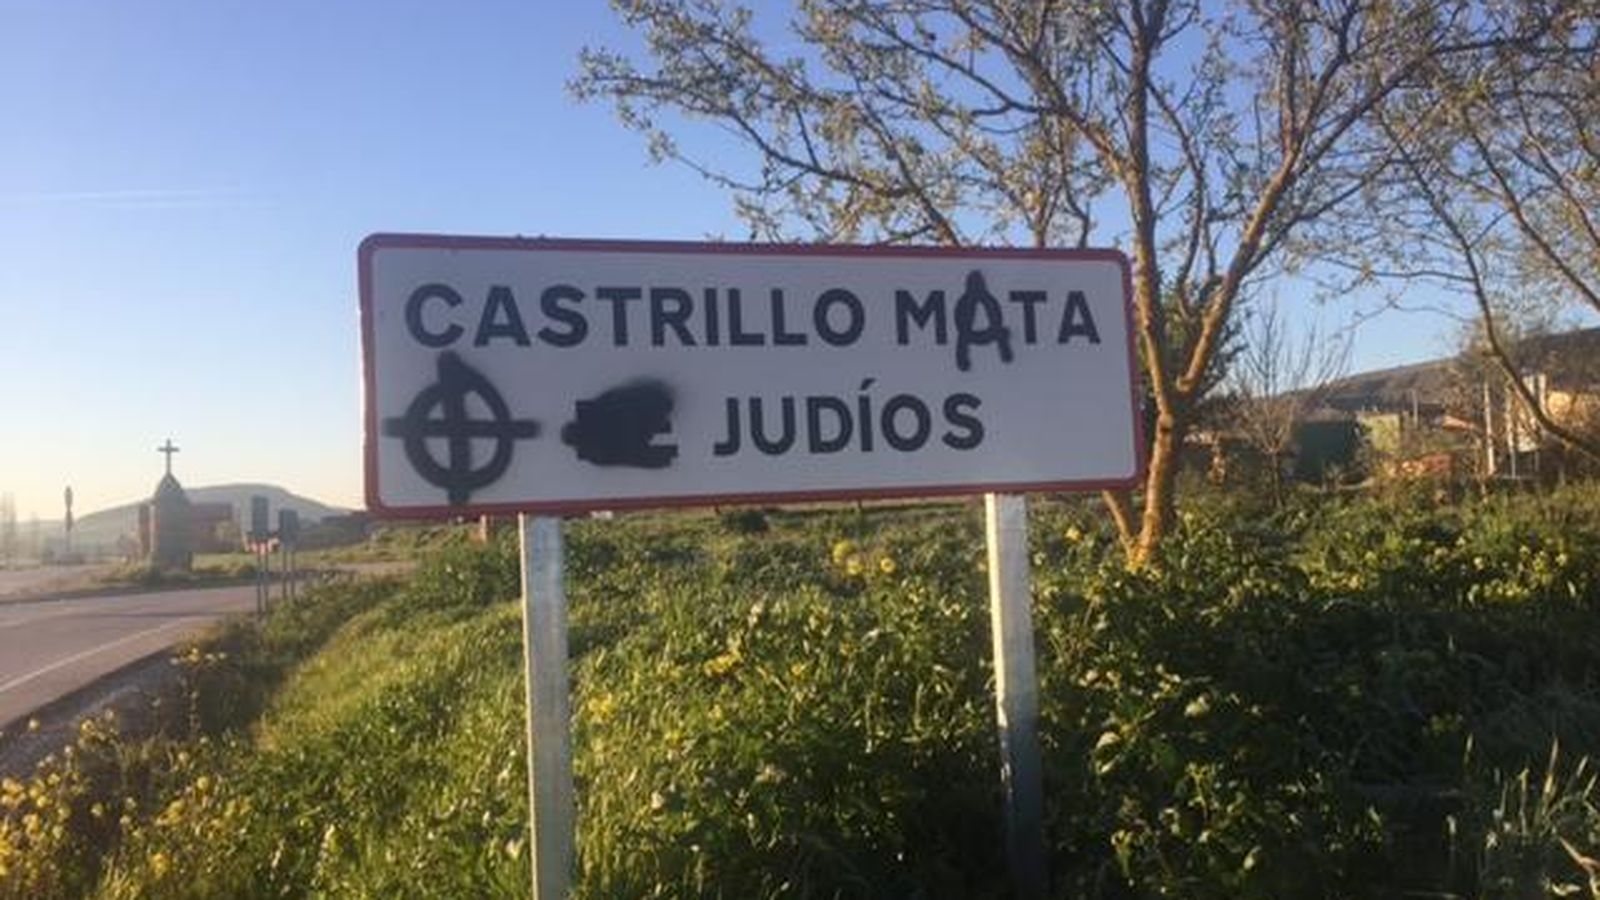 Foto: Castrillo Mota de Judíos tendrá que poner un cartel de acceso nuevo tras ser vandalizado el pasado domingo. (EC)